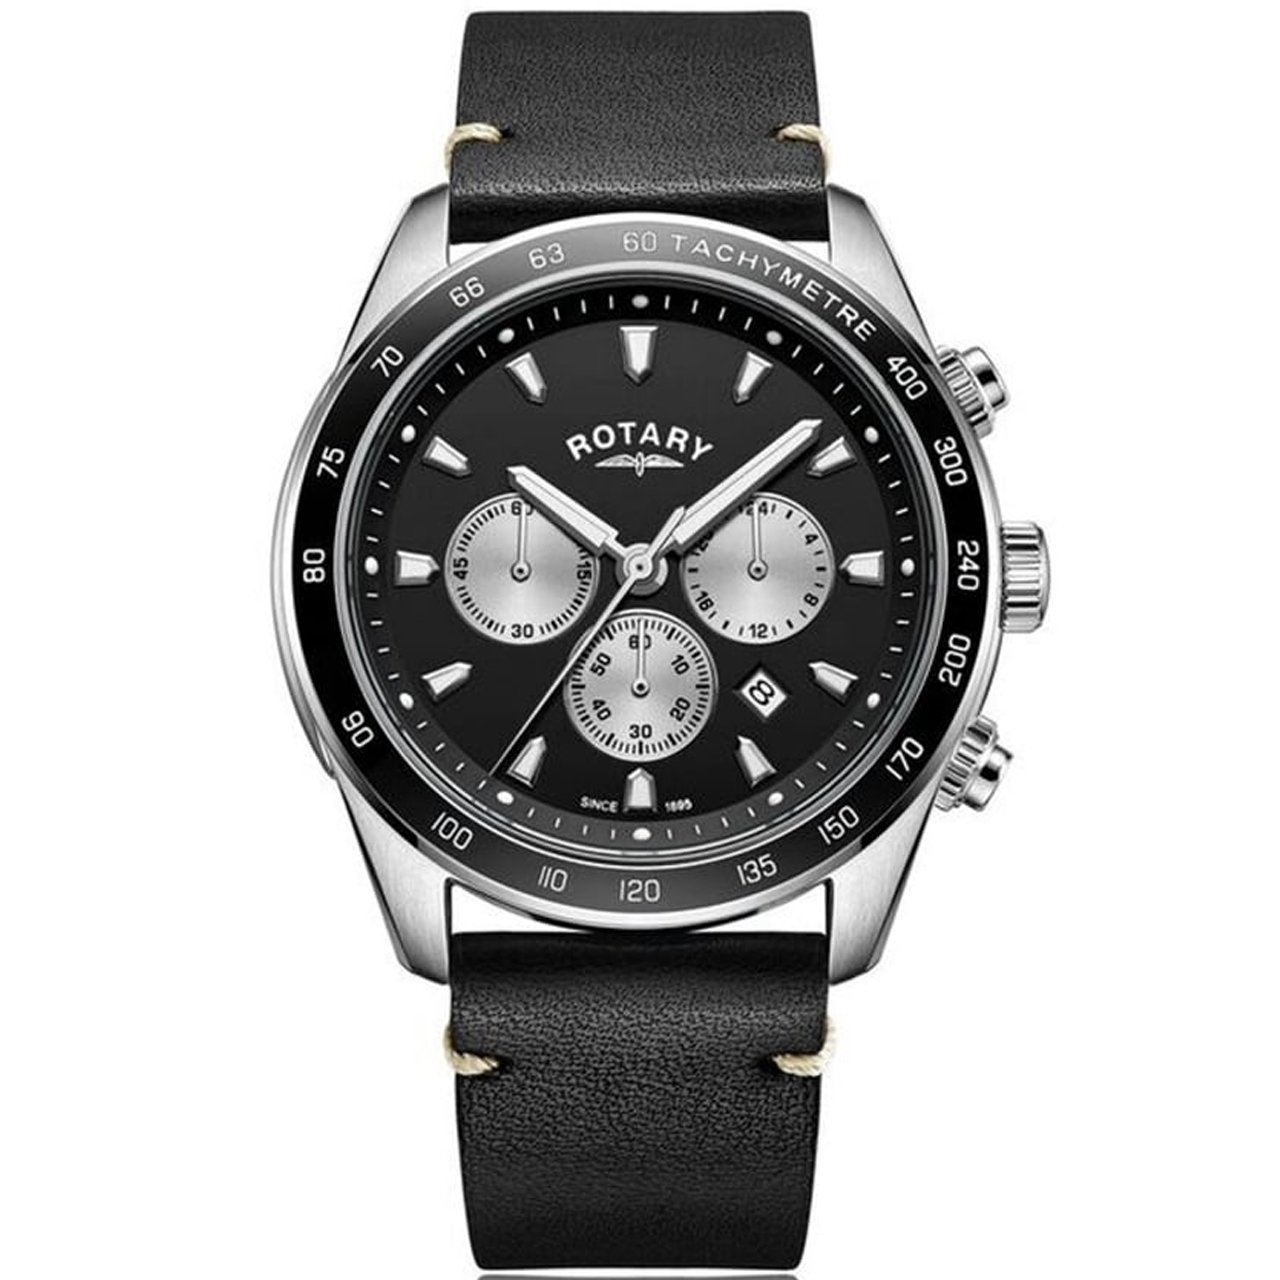 ساعت مچی عقربه ای مردانه کلاسیک برند روتاری مدل GS05115/04